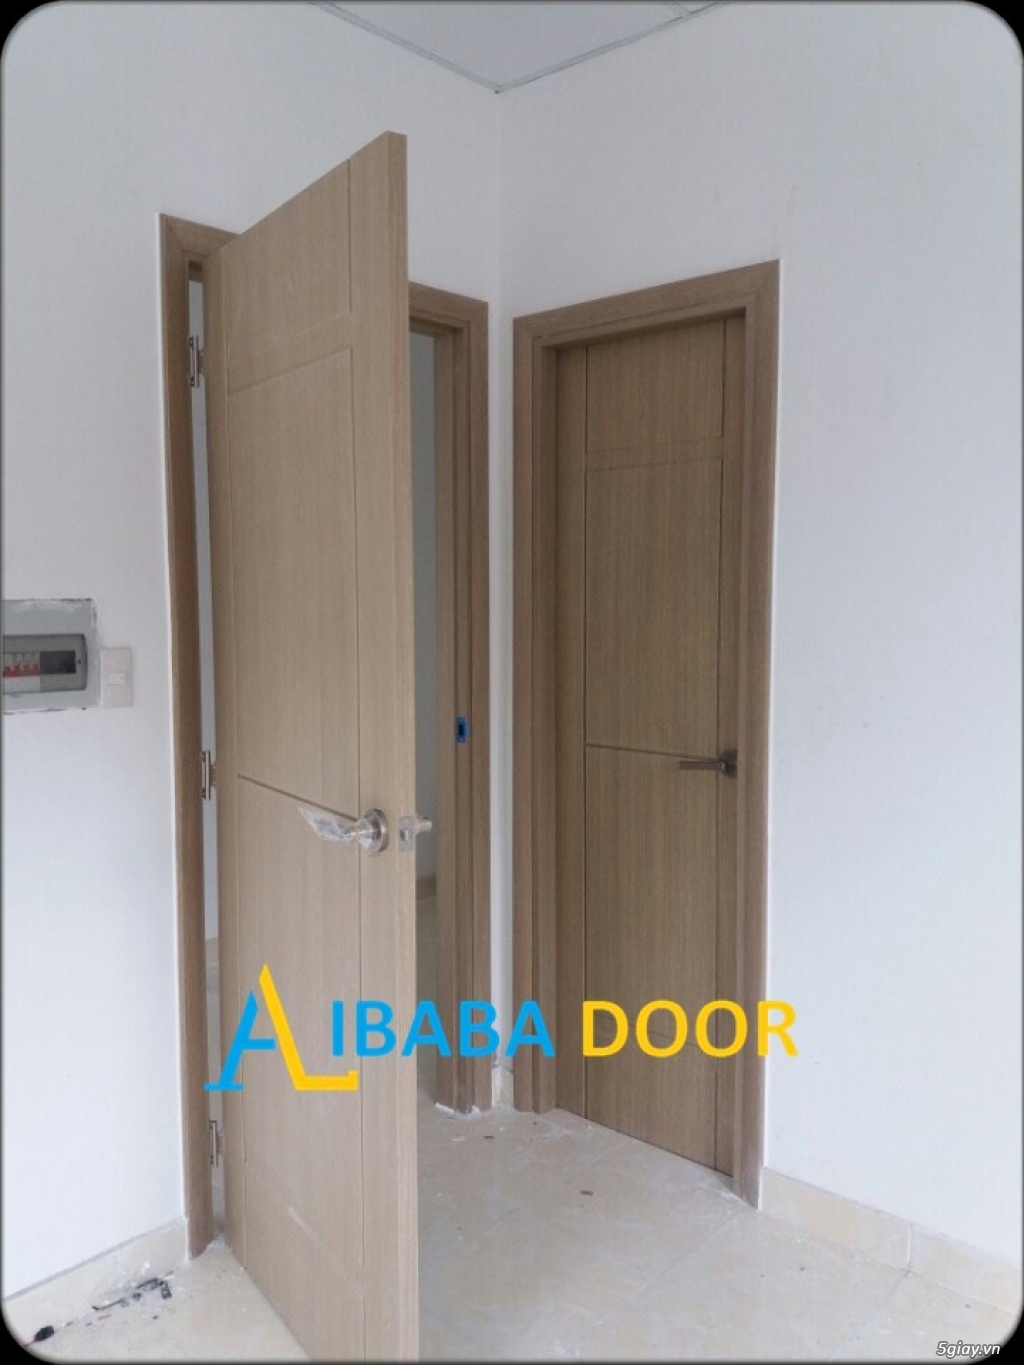 Alibabadoor chuyên cung cấp các loại cửa nhựa,cửa gỗ cho công trình